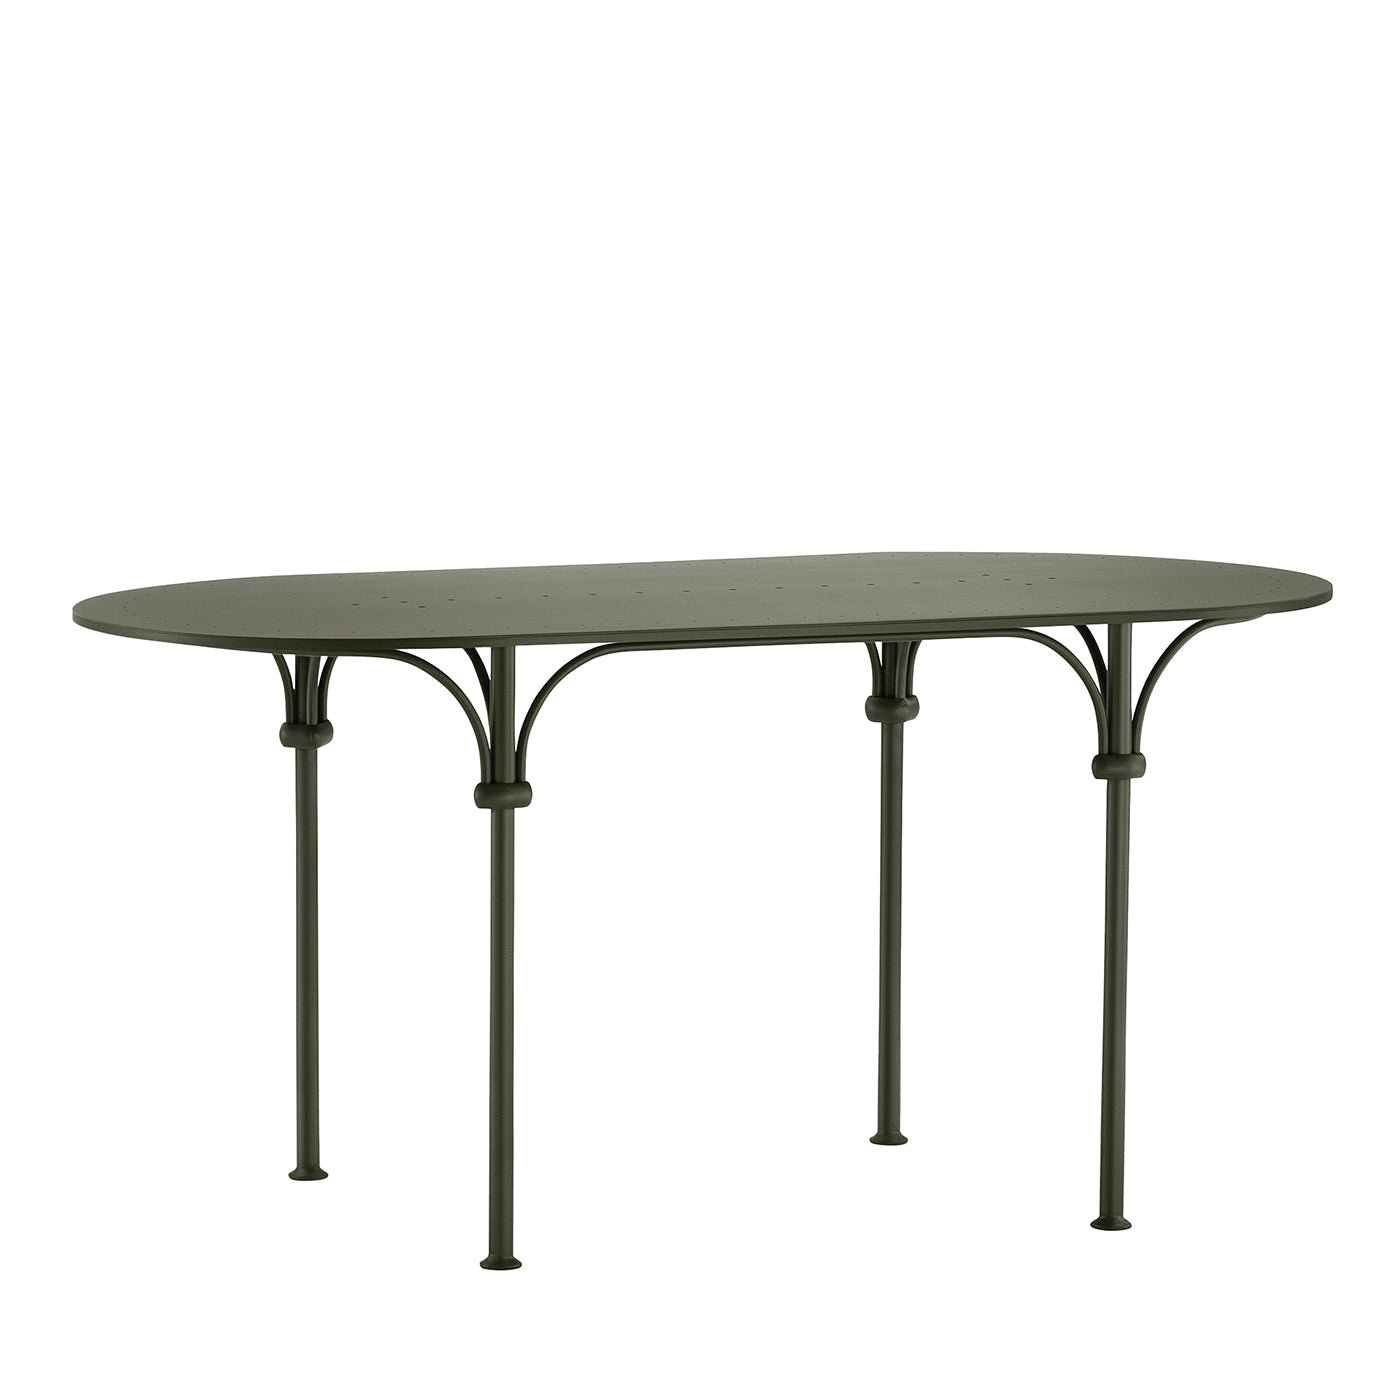 Tavolario Table ovale en fer forgé vert - Vue principale